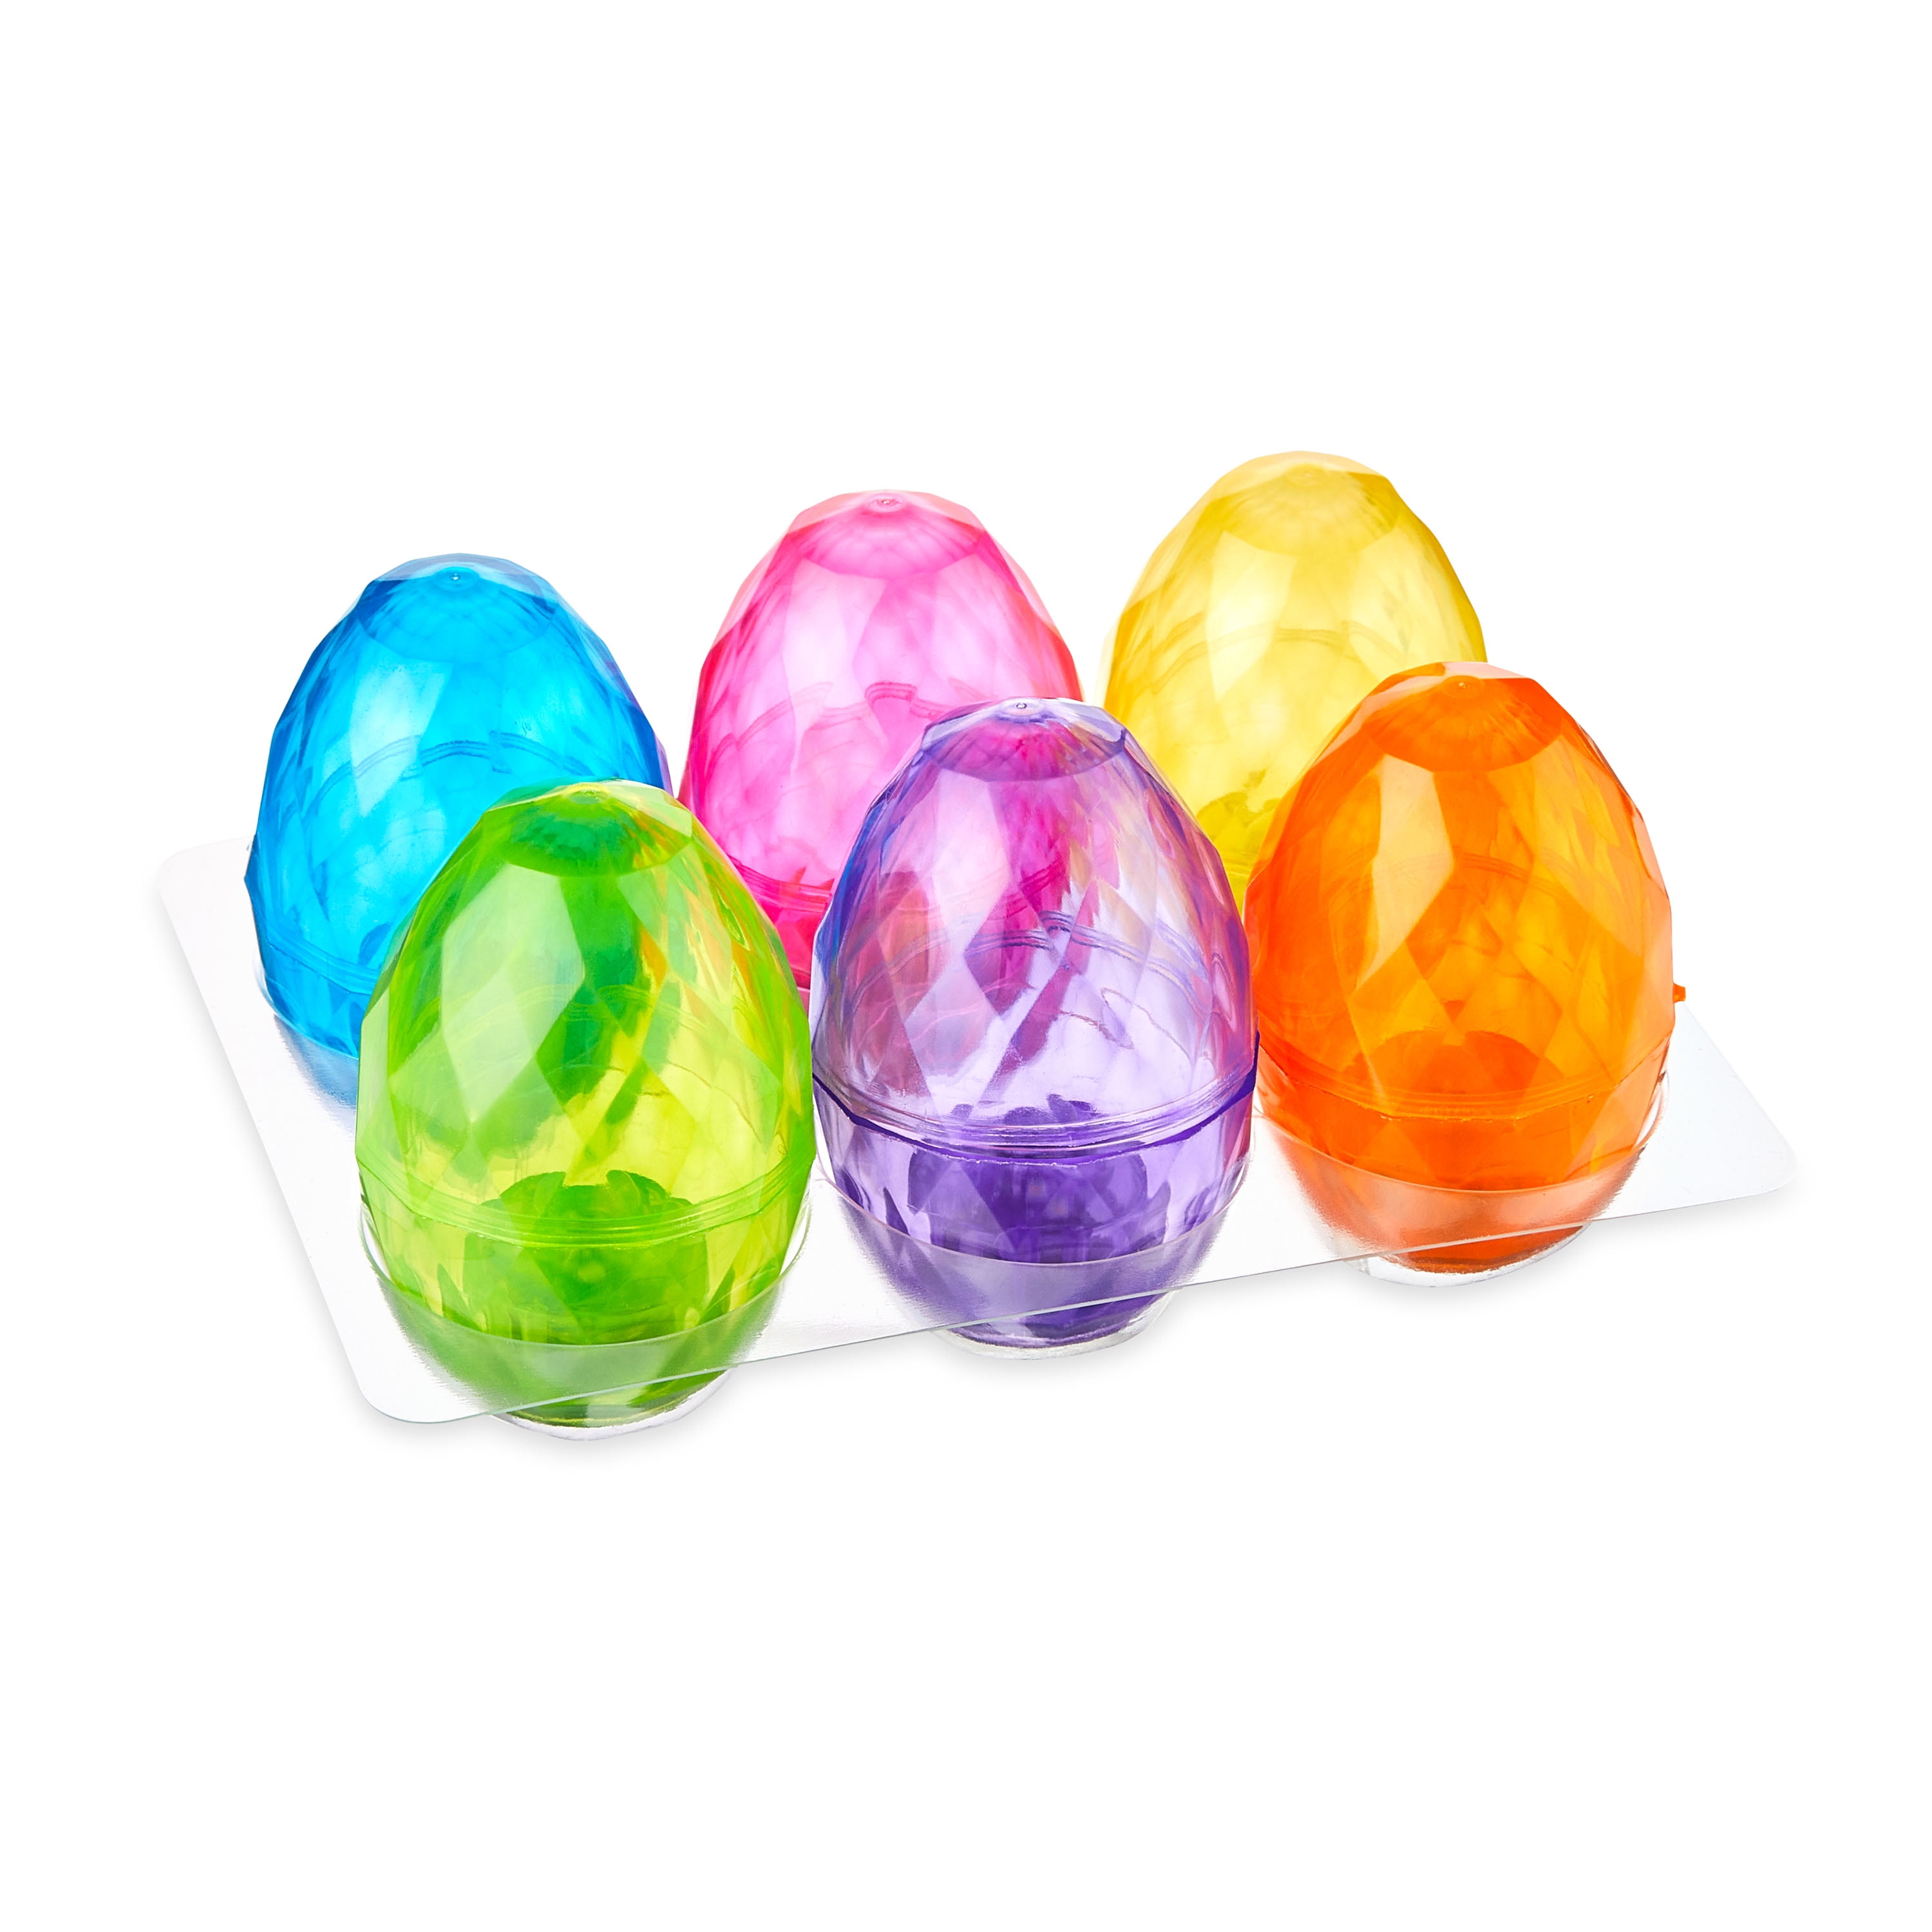  LUSandy 5pcs DIY 5D Colorful Easter Eggs Diamond